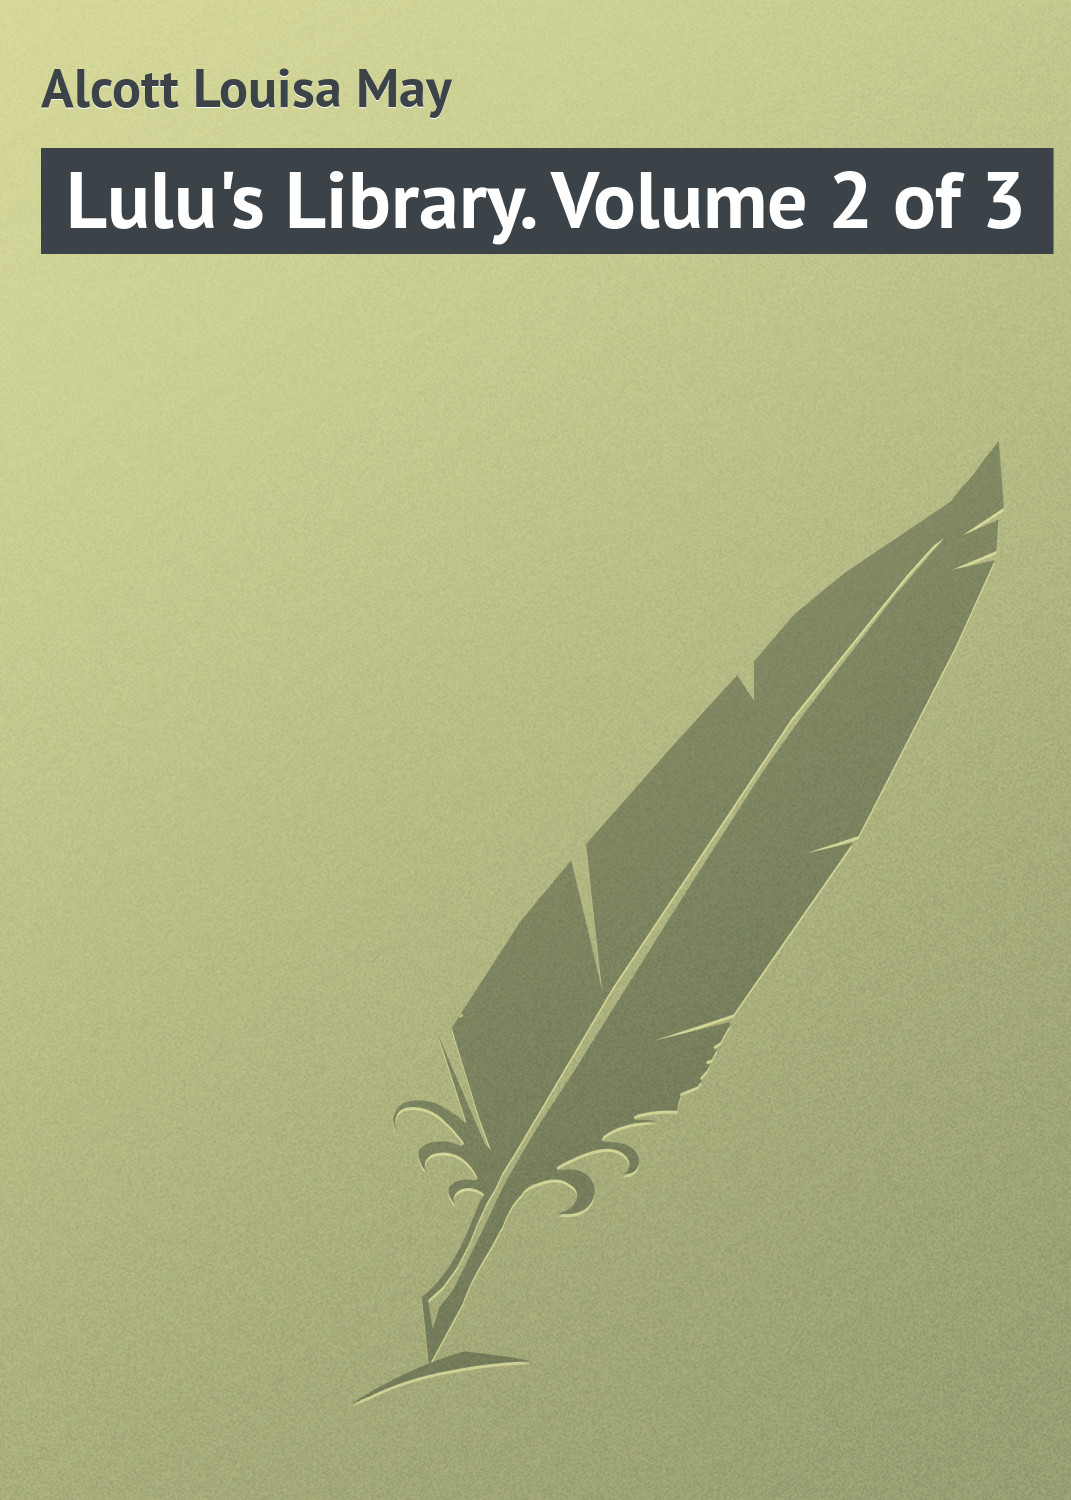 Книга Lulu's Library. Volume 2 of 3 из серии , созданная Louisa Alcott, может относится к жанру Зарубежная классика. Стоимость электронной книги Lulu's Library. Volume 2 of 3 с идентификатором 23145379 составляет 5.99 руб.